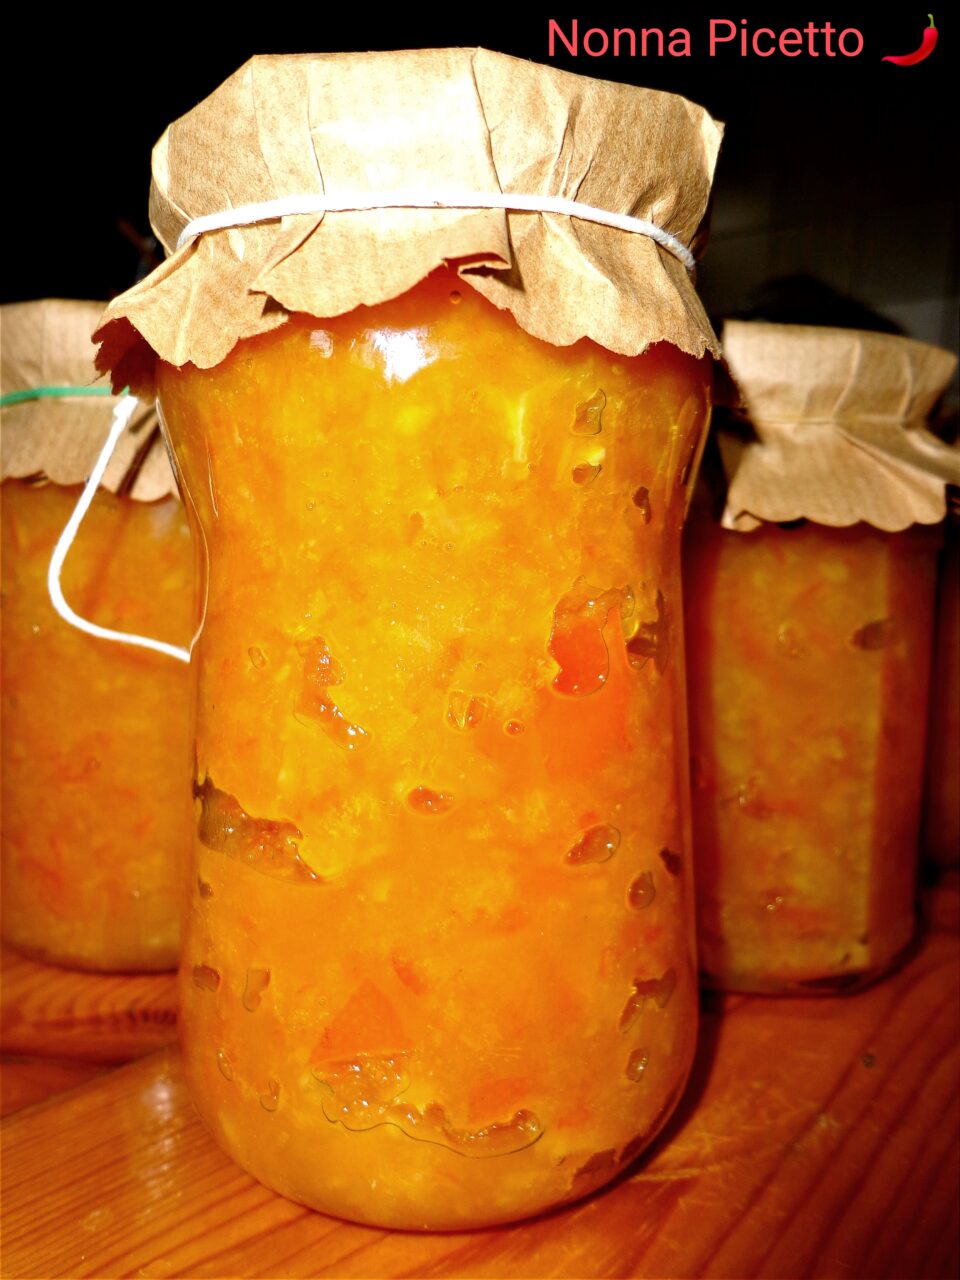 Marmellata di arance con la buccia e poco zucchero ricetta siciliana facile e veloce della nonna